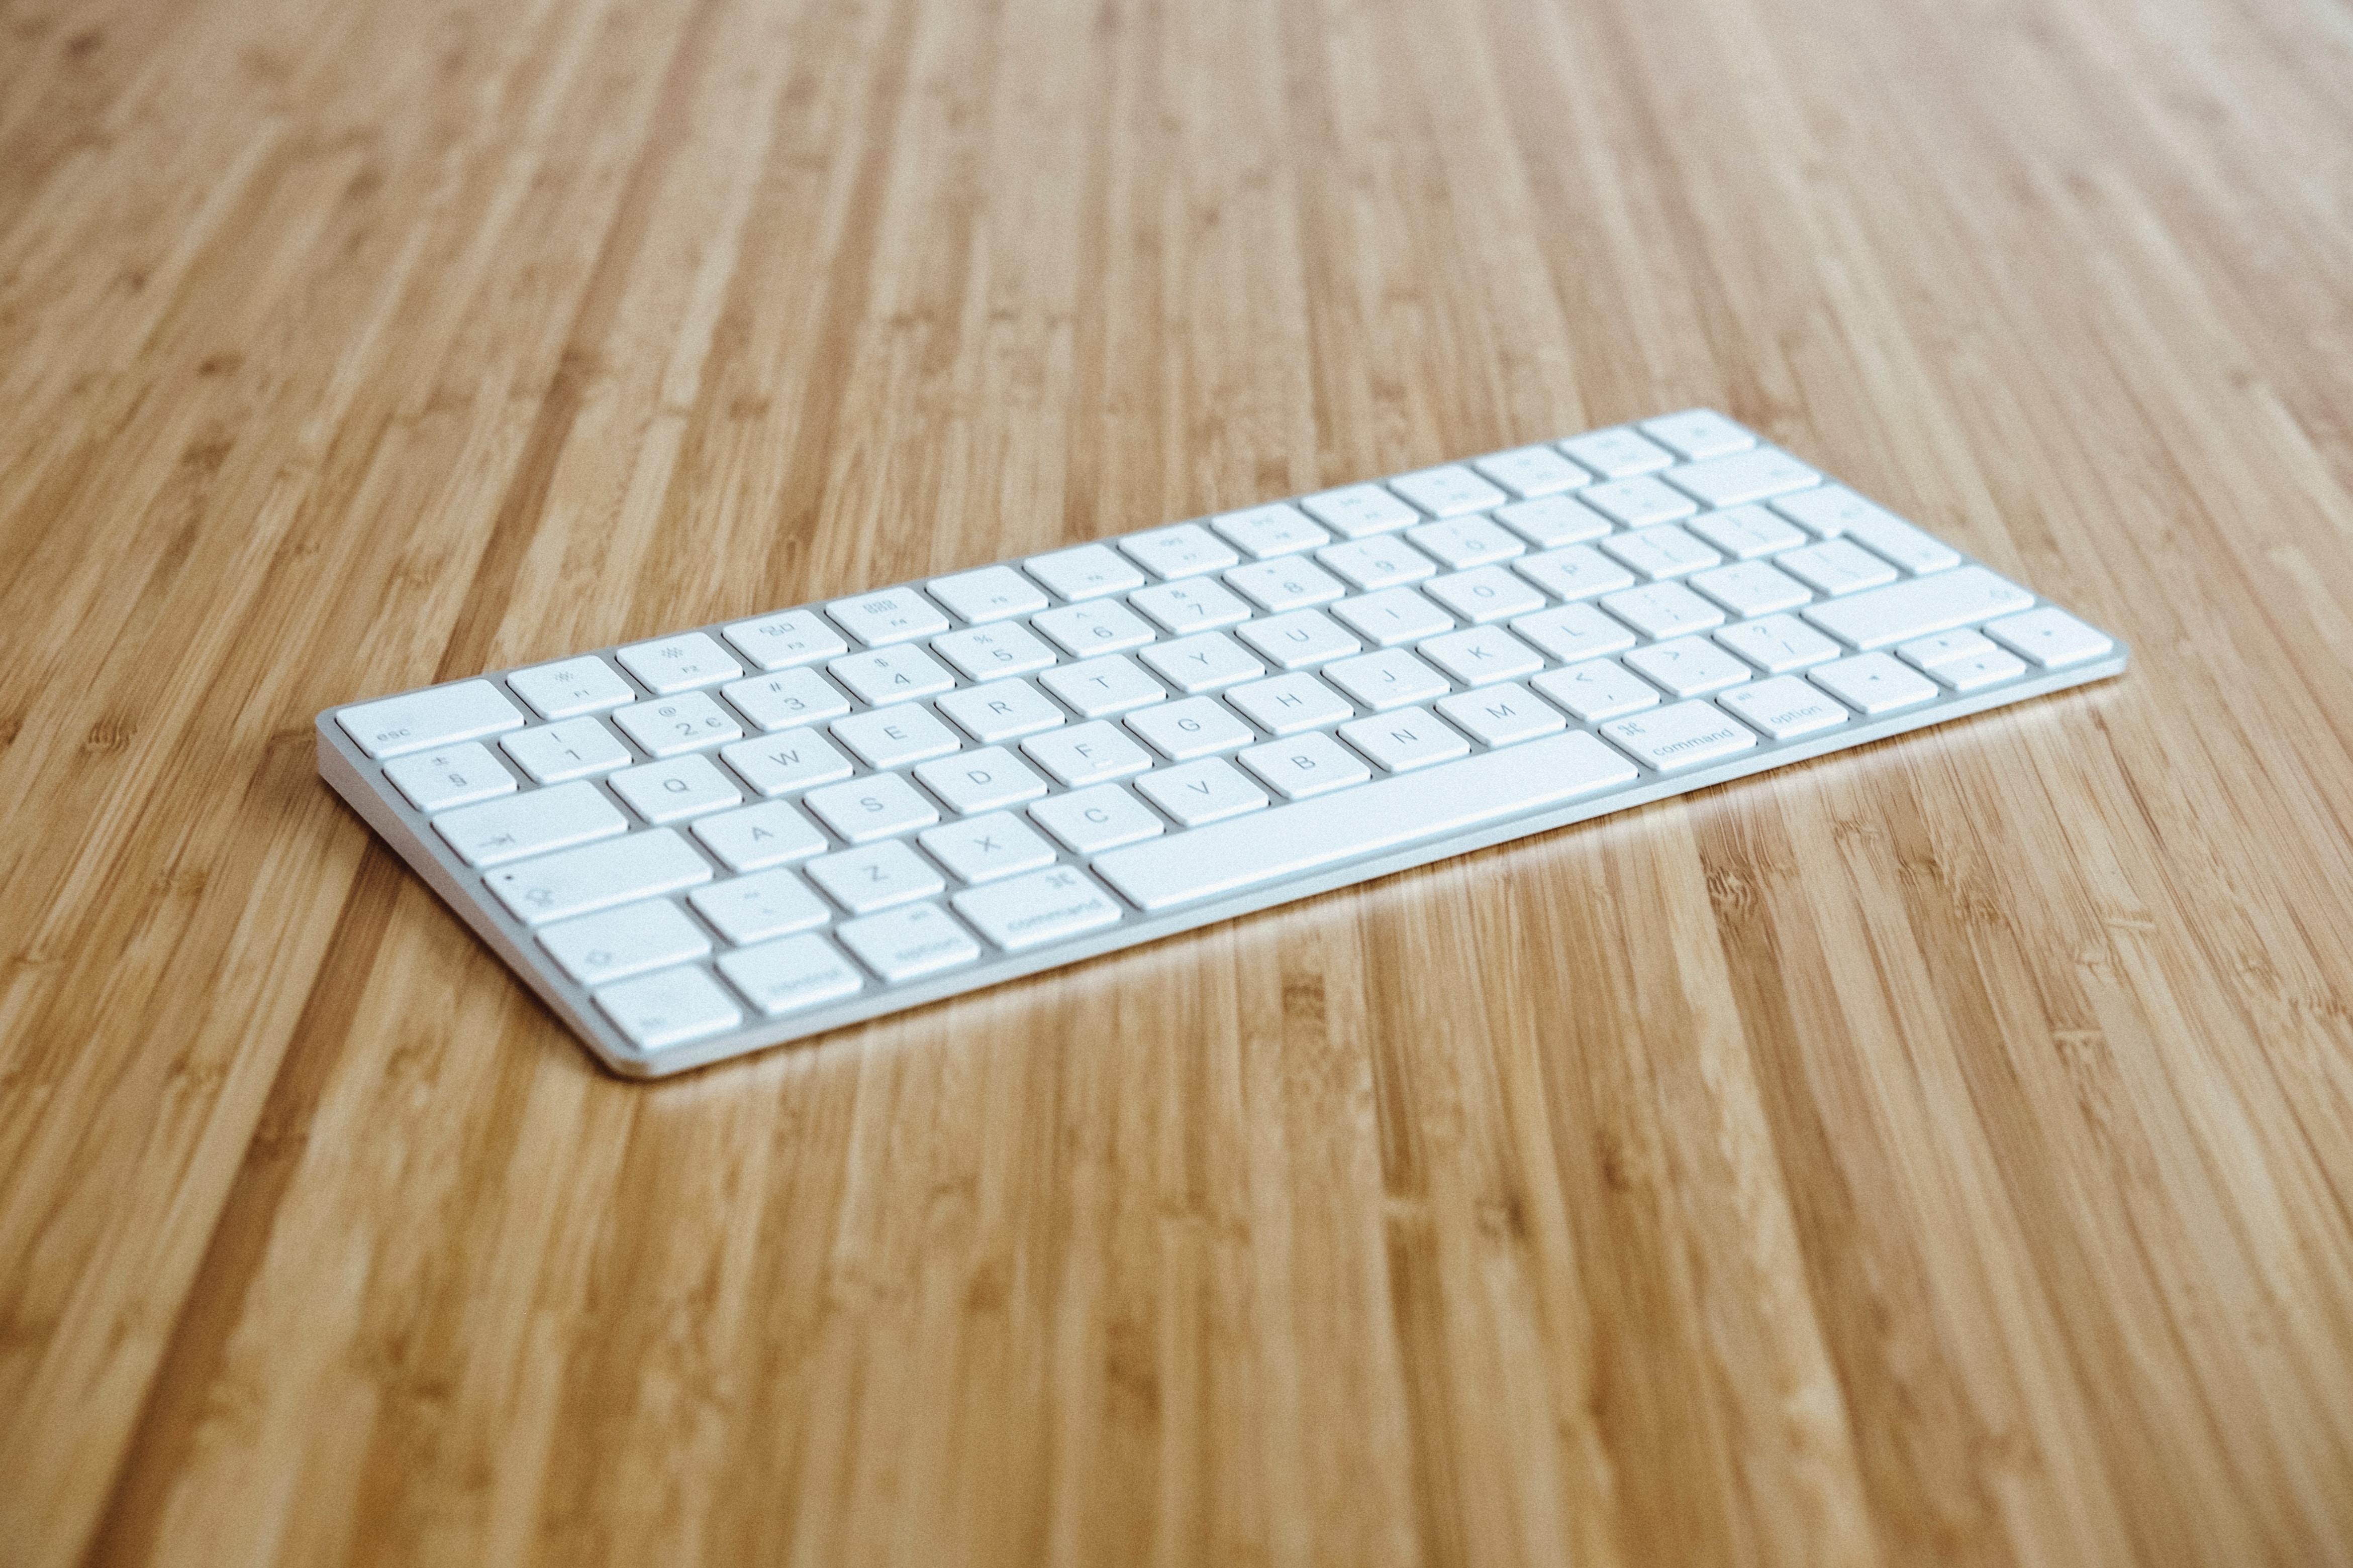 how-to-clean-a-magic-keyboard